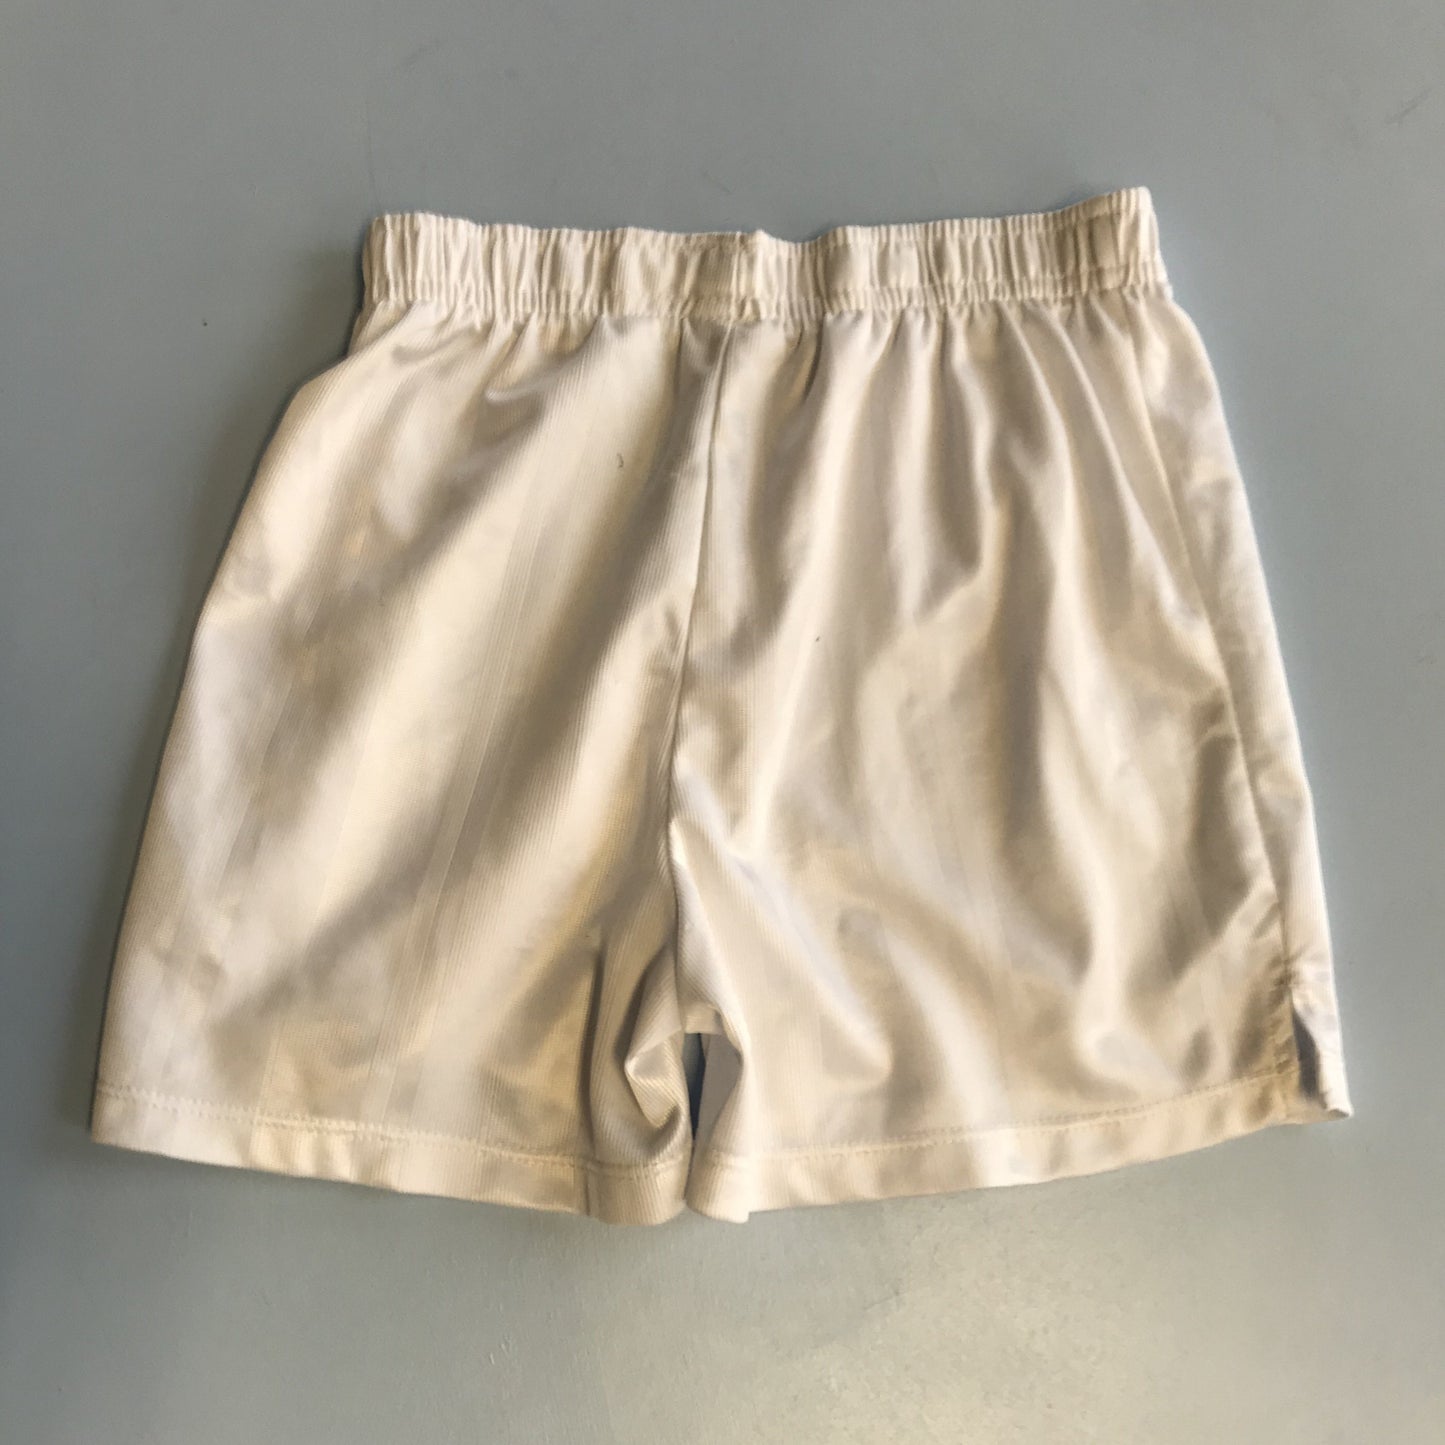 Shorts - White Sondico - Age 4